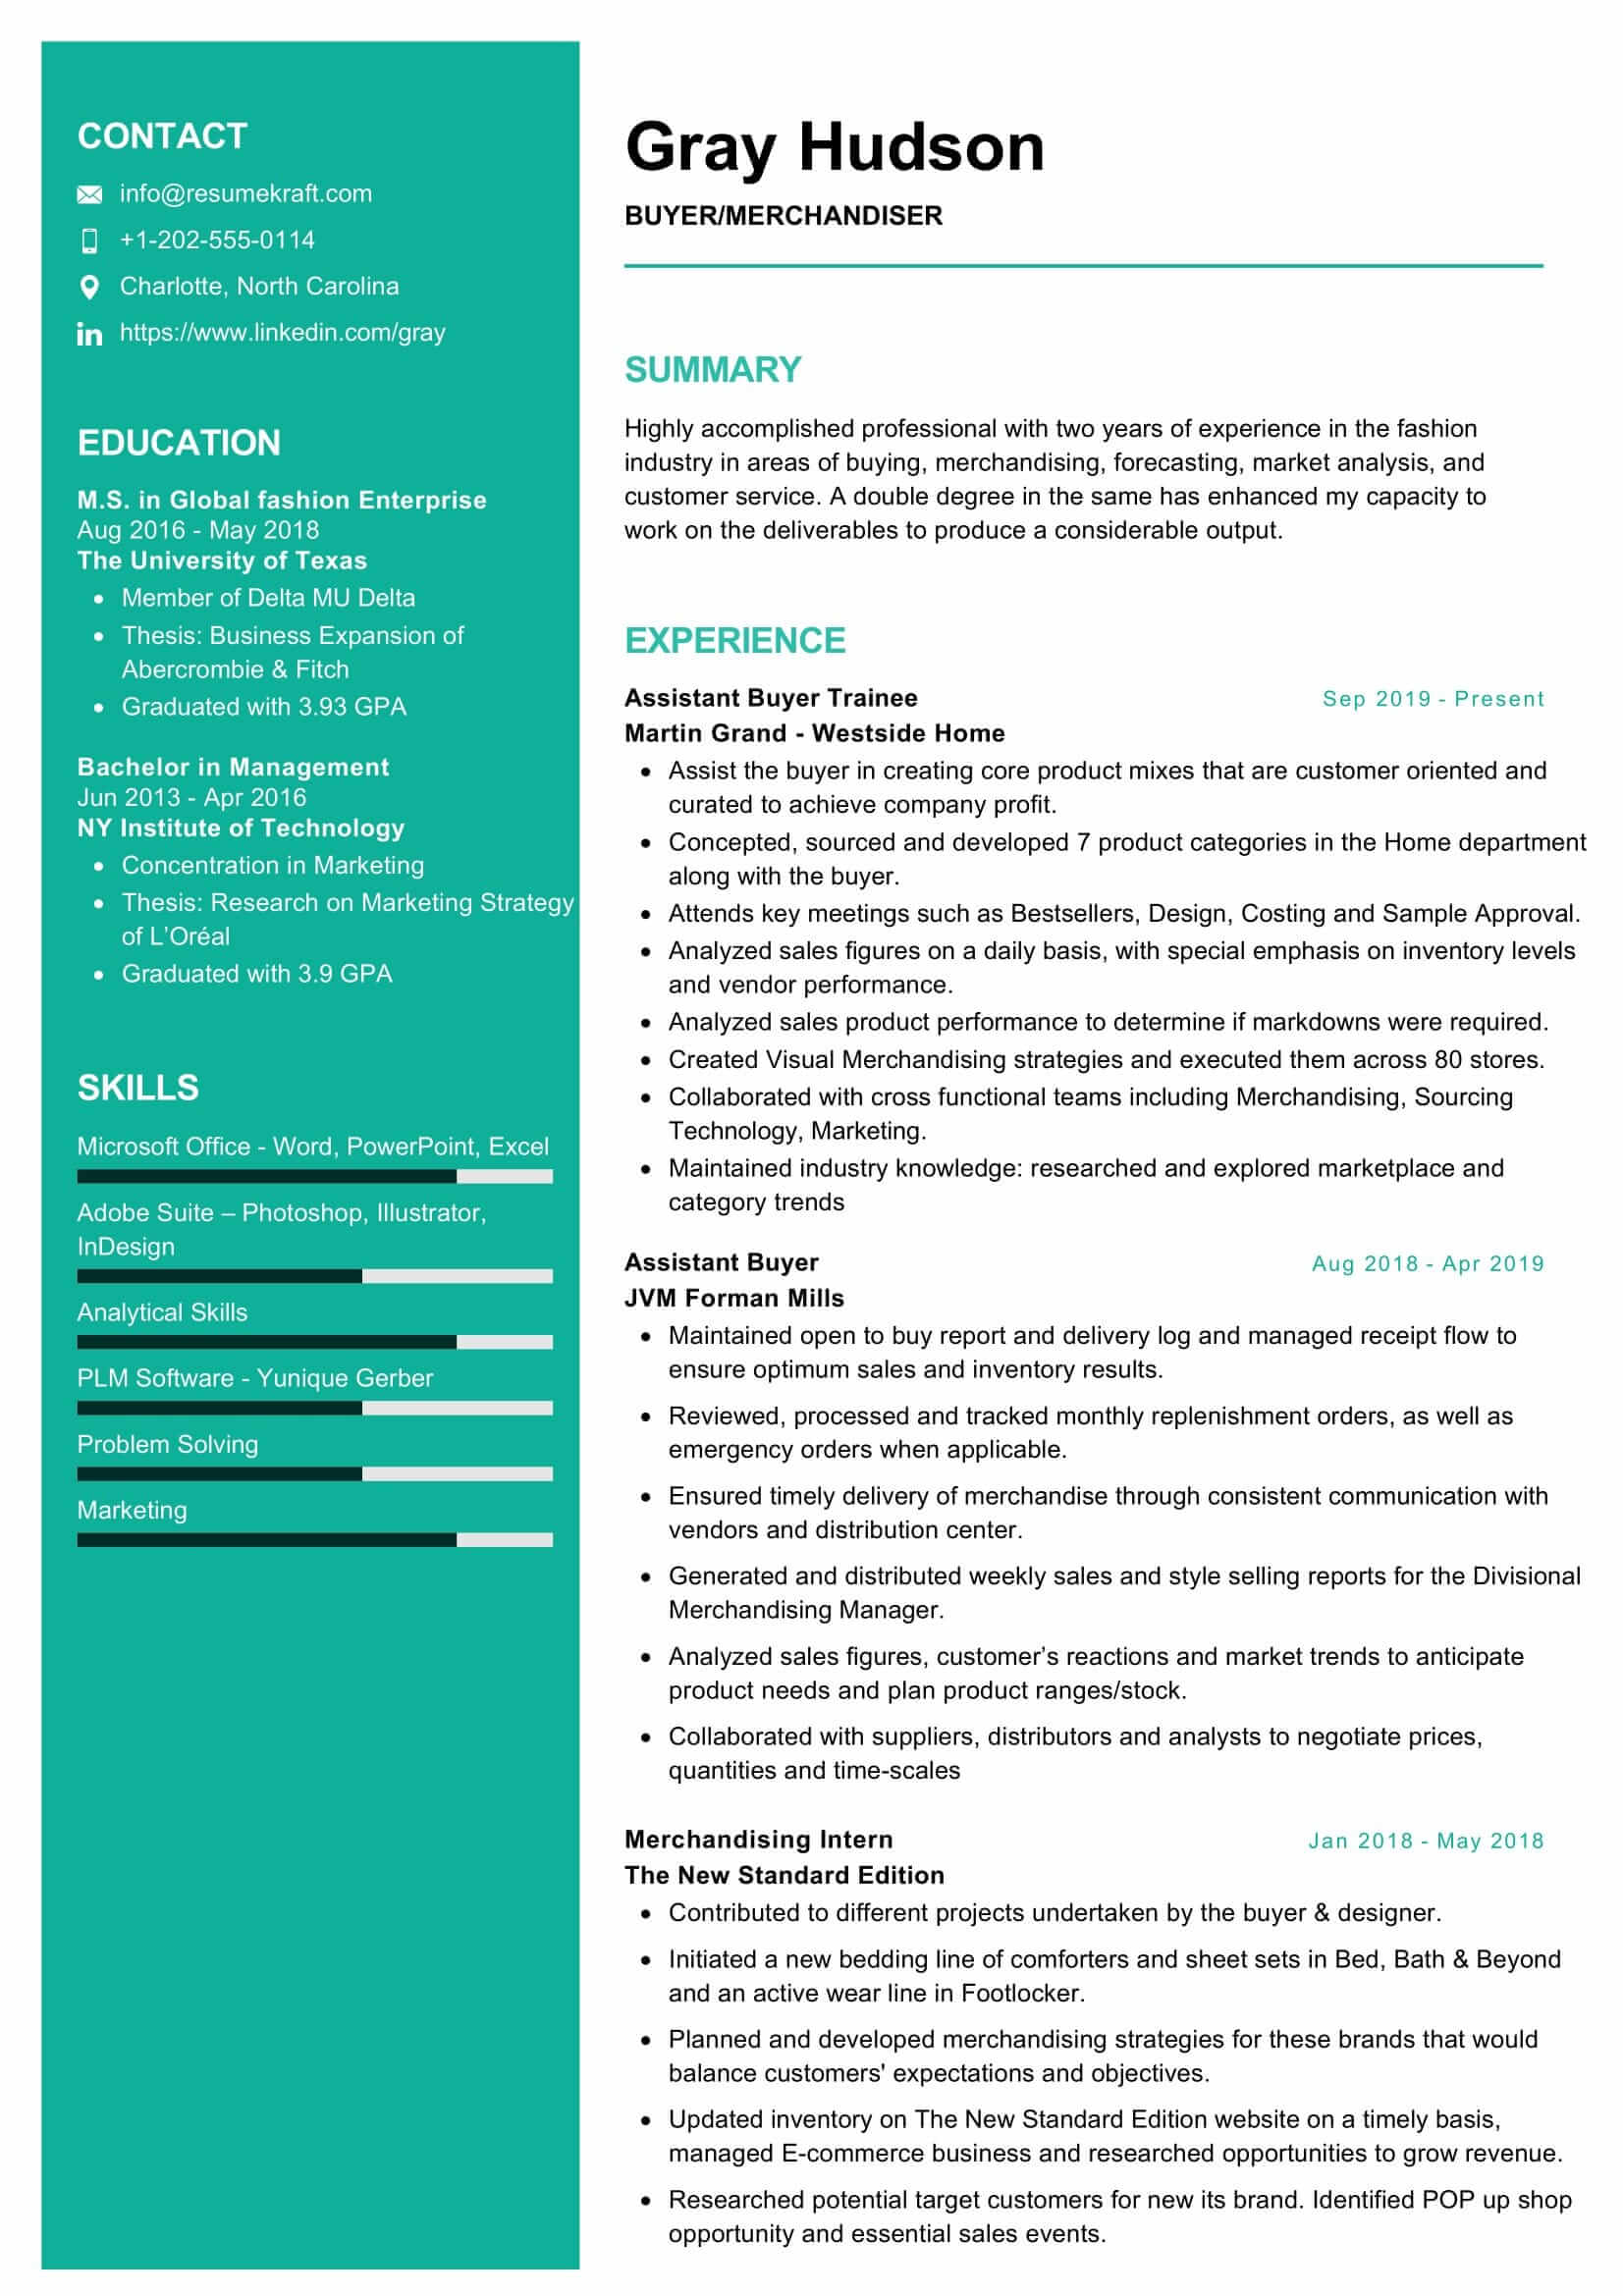 Merchandiser-Resume-Sample_0001